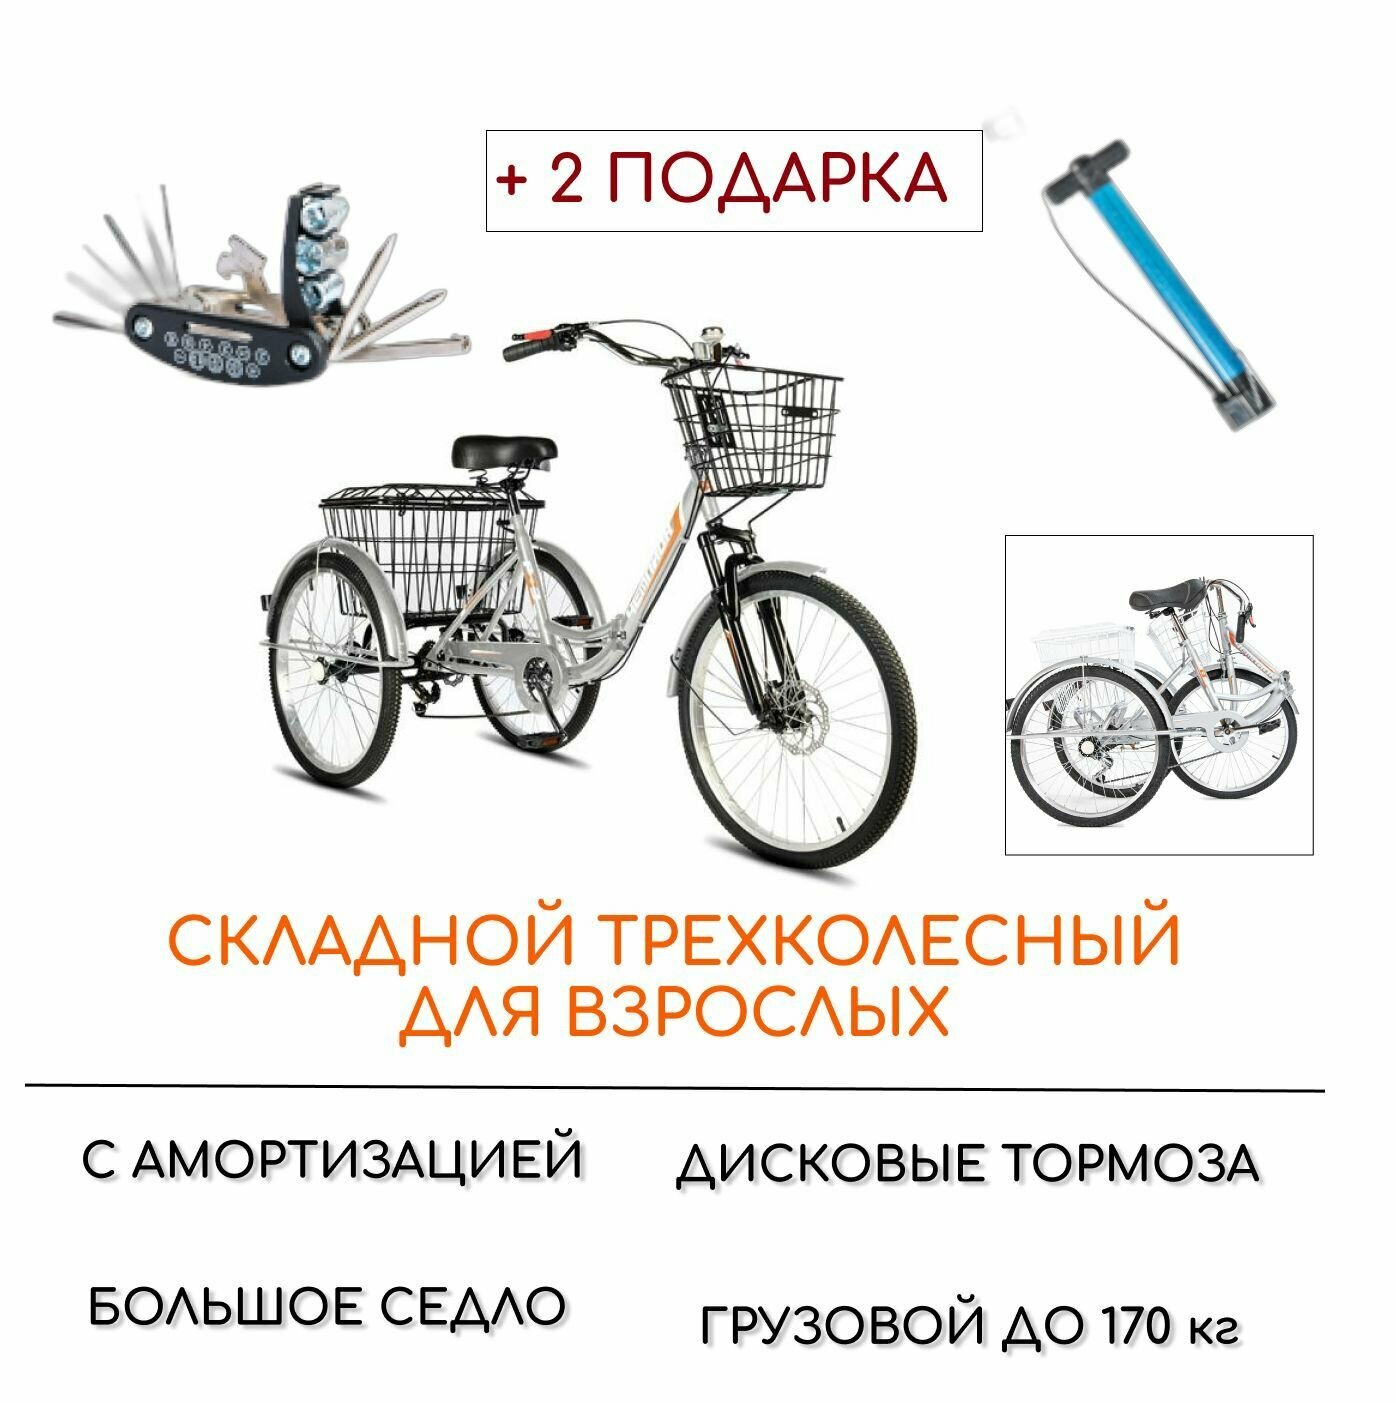 Трехколесный велосипед для взрослых РВЗ "Чемпион" (складной), 24", насос и набор ключей в комплекте, серебро